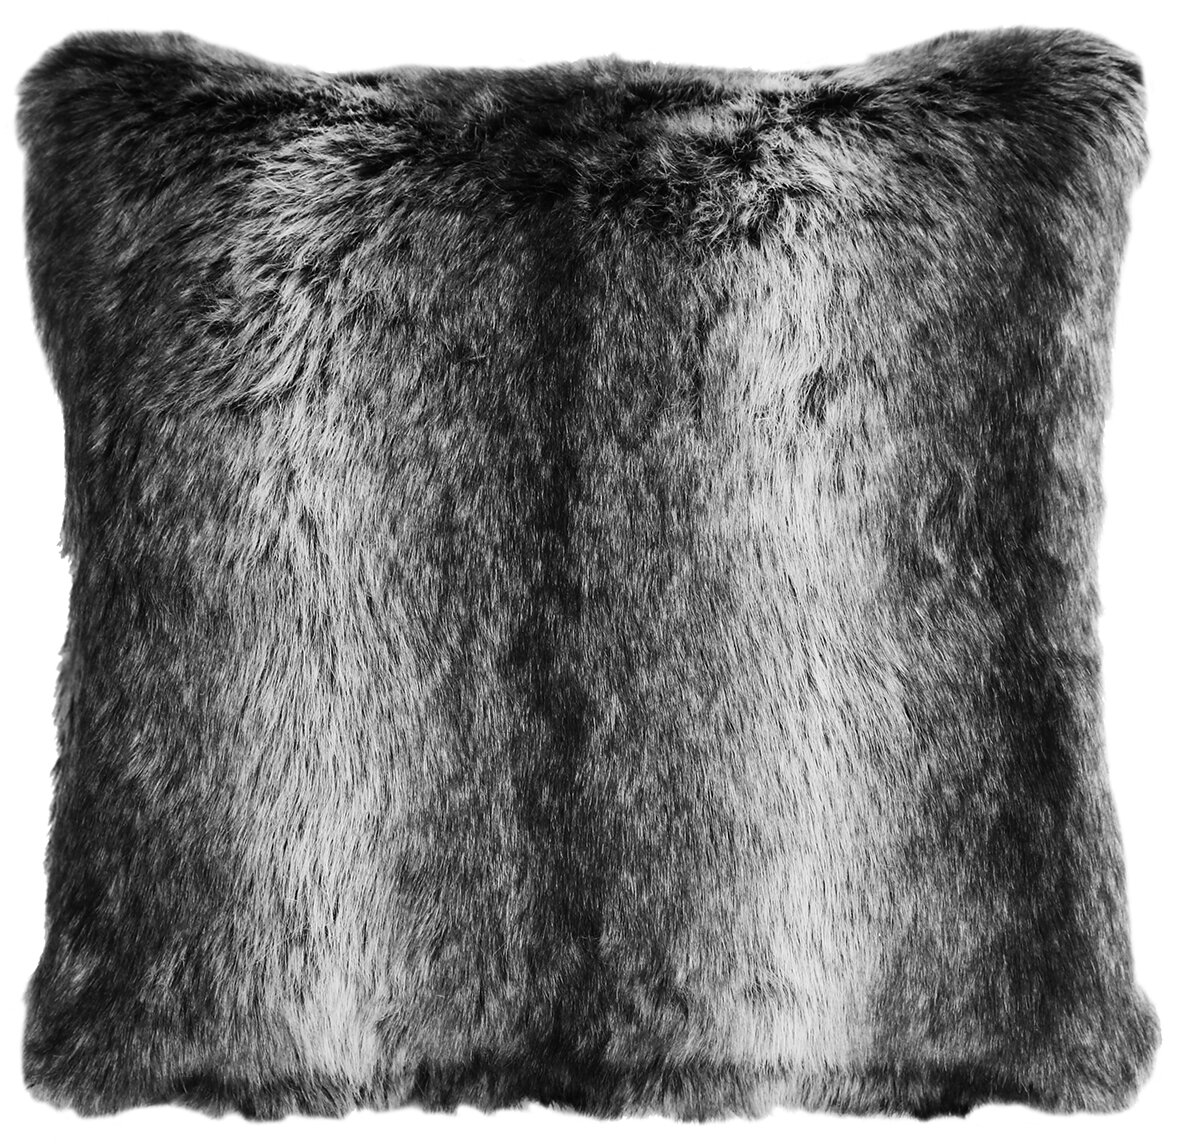 rosette fur throw pillows